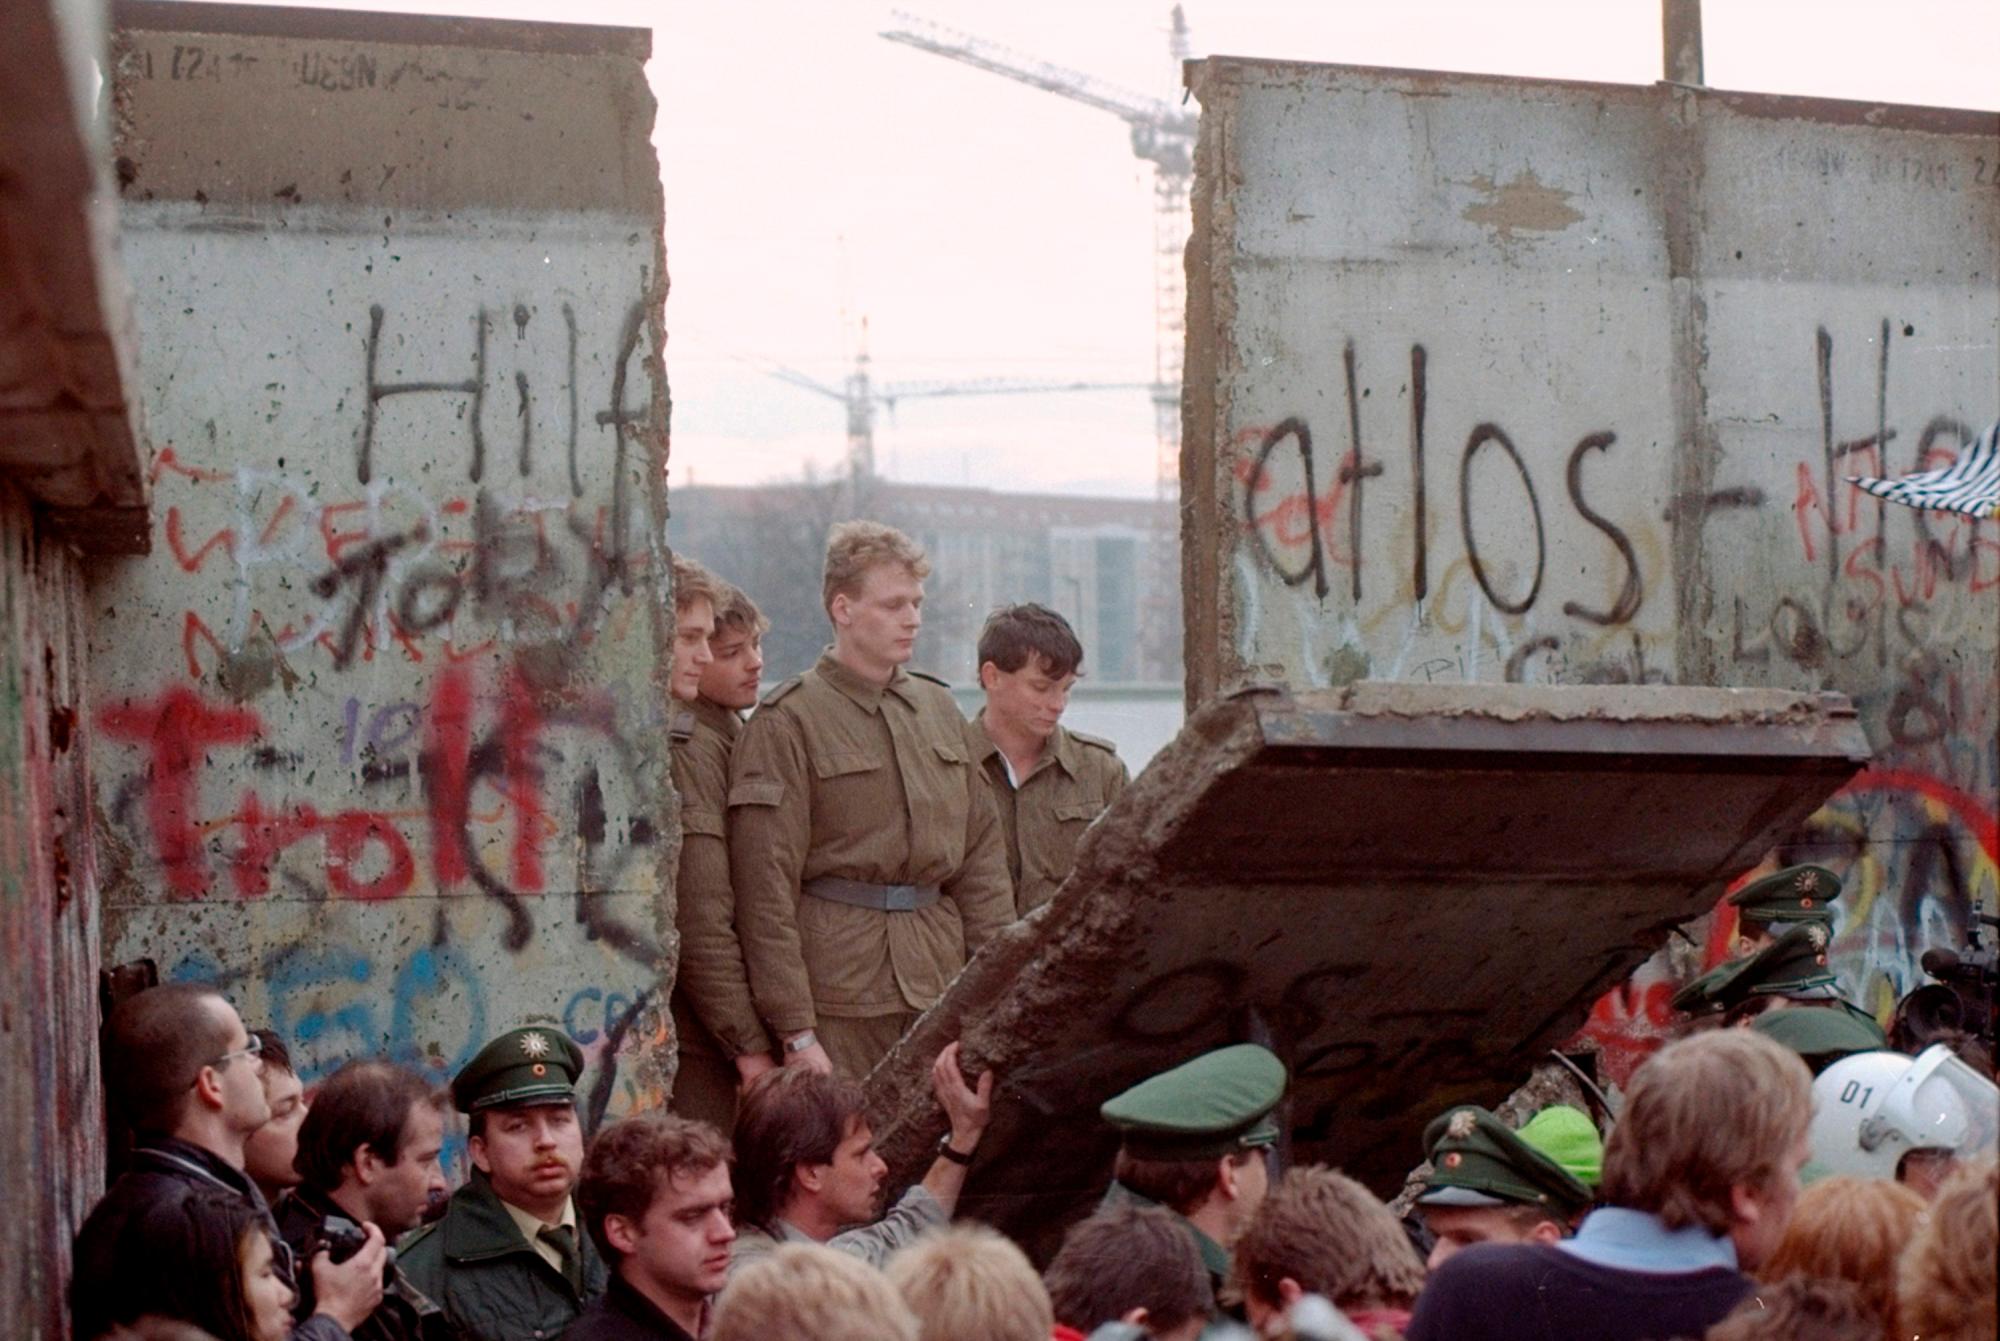 ARCHIVO - En esta foto de archivo del 11 de noviembre de 1989, los guardias fronterizos de Alemania Oriental son vistos a través de una brecha en el muro de Berlín después de que los manifestantes derribaron un segmento del muro en la puerta de Brandenburgo, Berlín. 